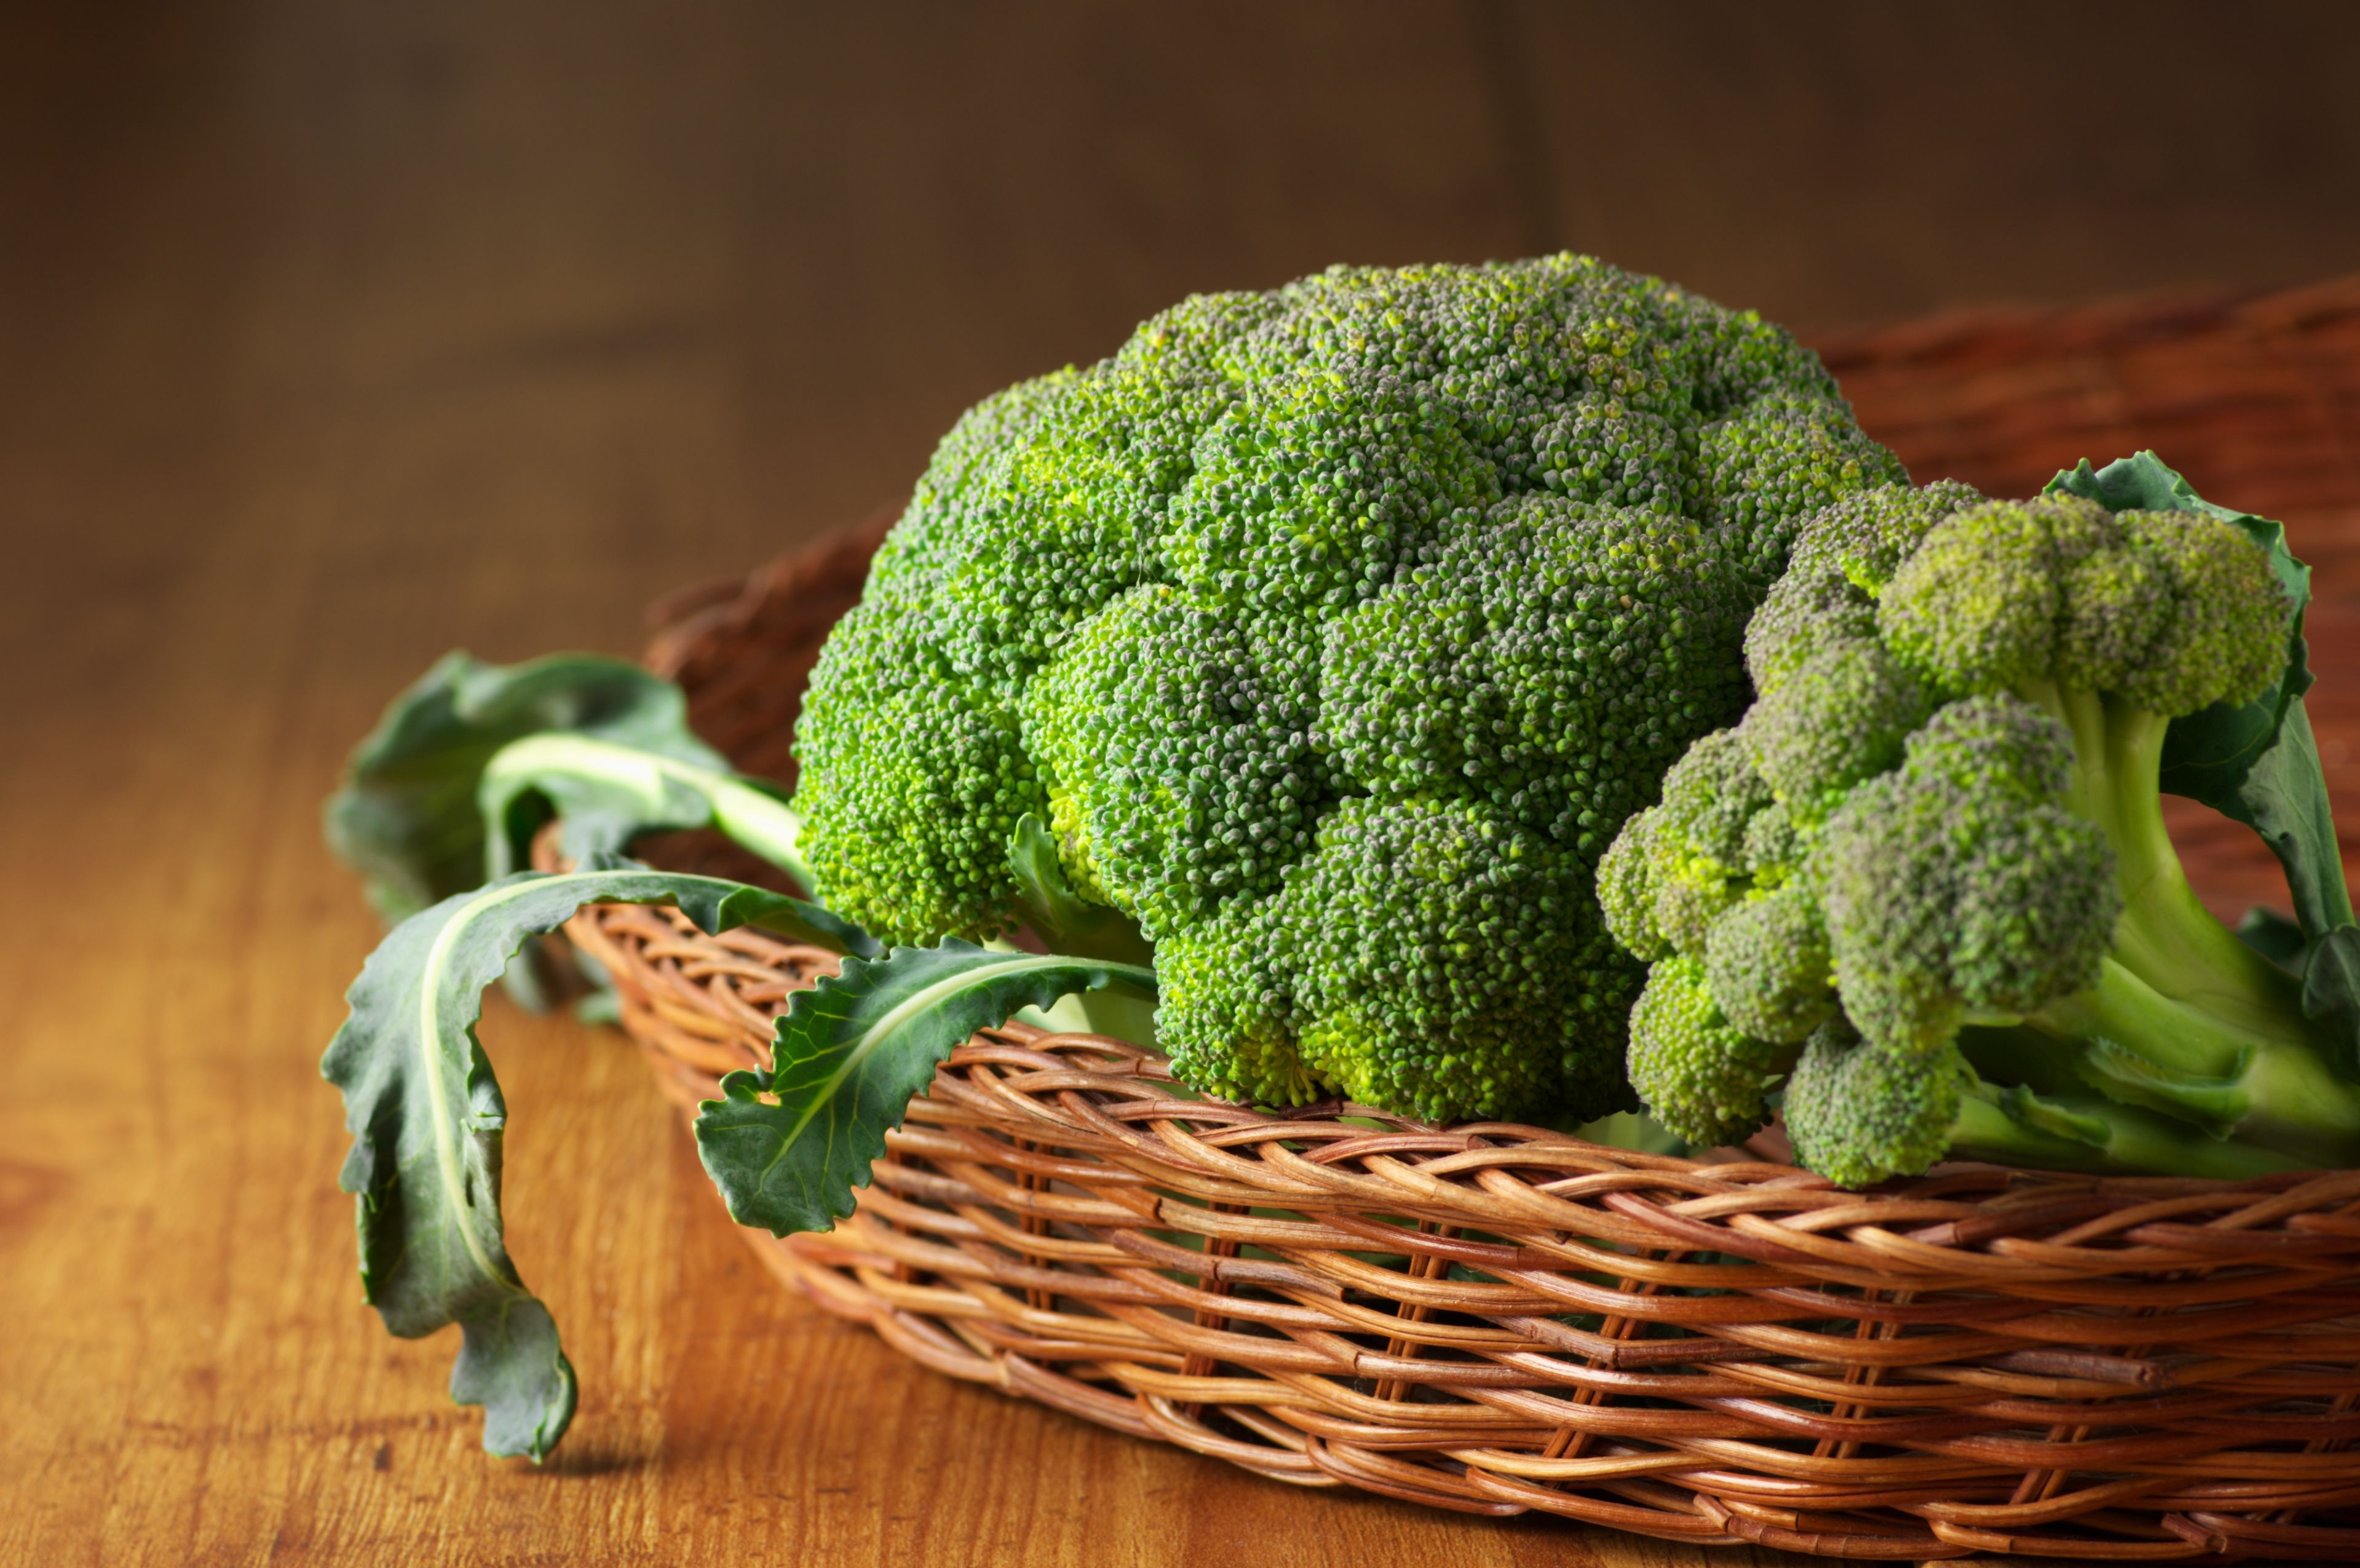 Remedios naturales: 10 alimentos para limpiar el hígado graso - Brócoli